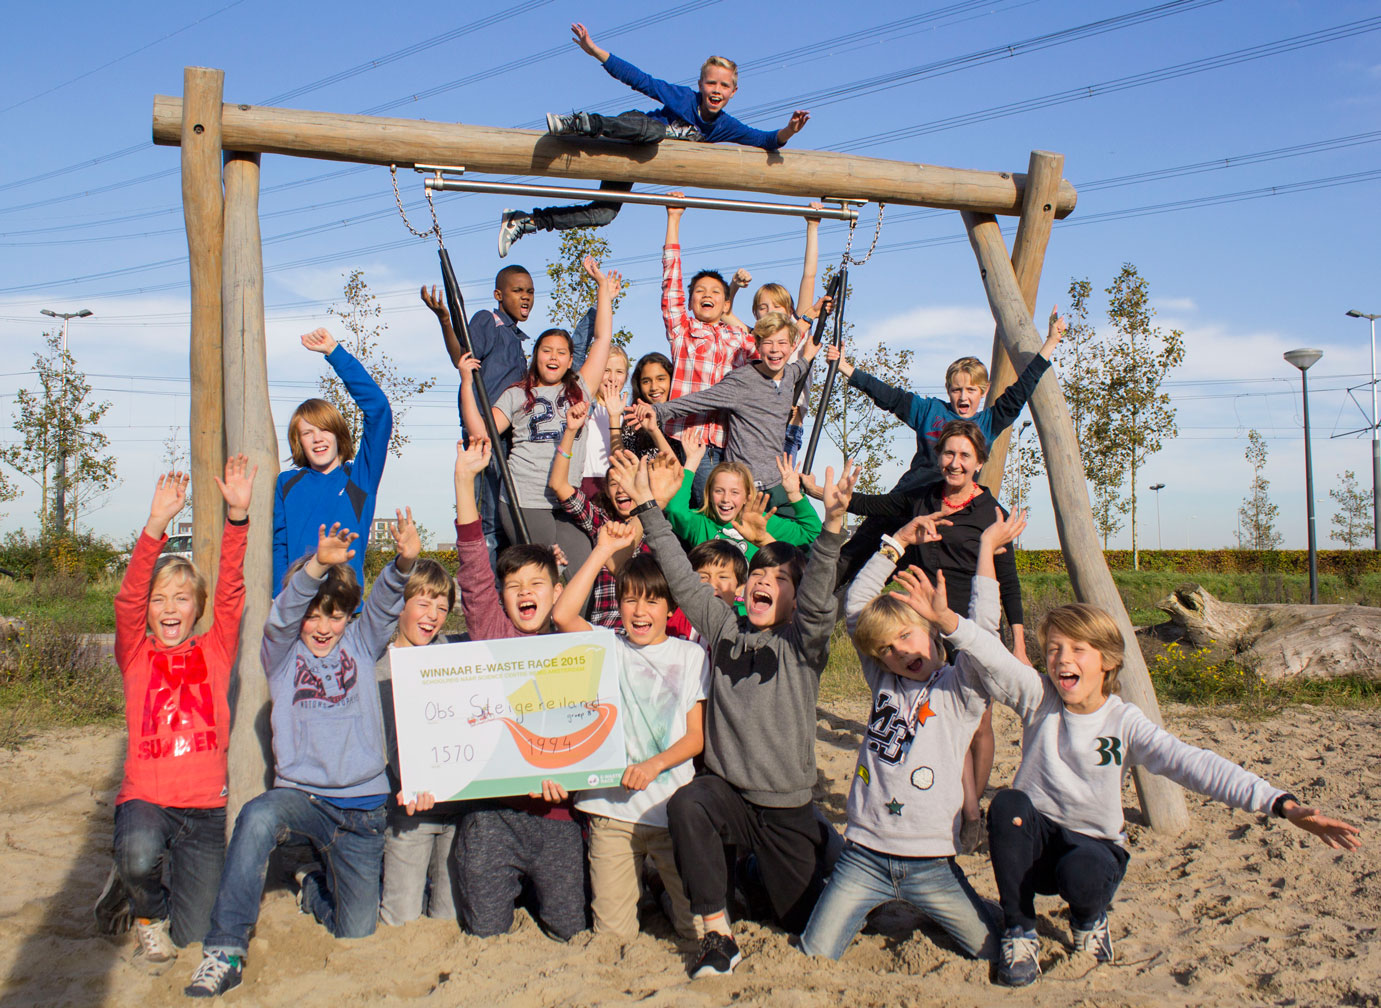 Montessorischool Steigereiland, winnaar E-waste race Amsterdam Oost/Nieuw-west